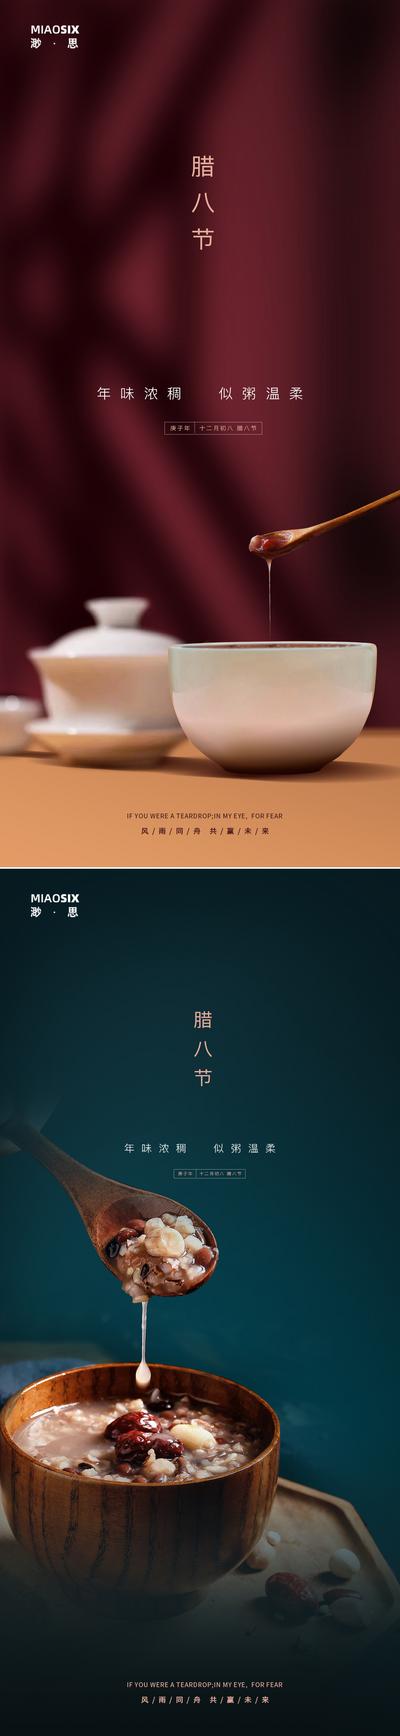 南门网 海报 中国传统节日 腊八节 粥 系列 